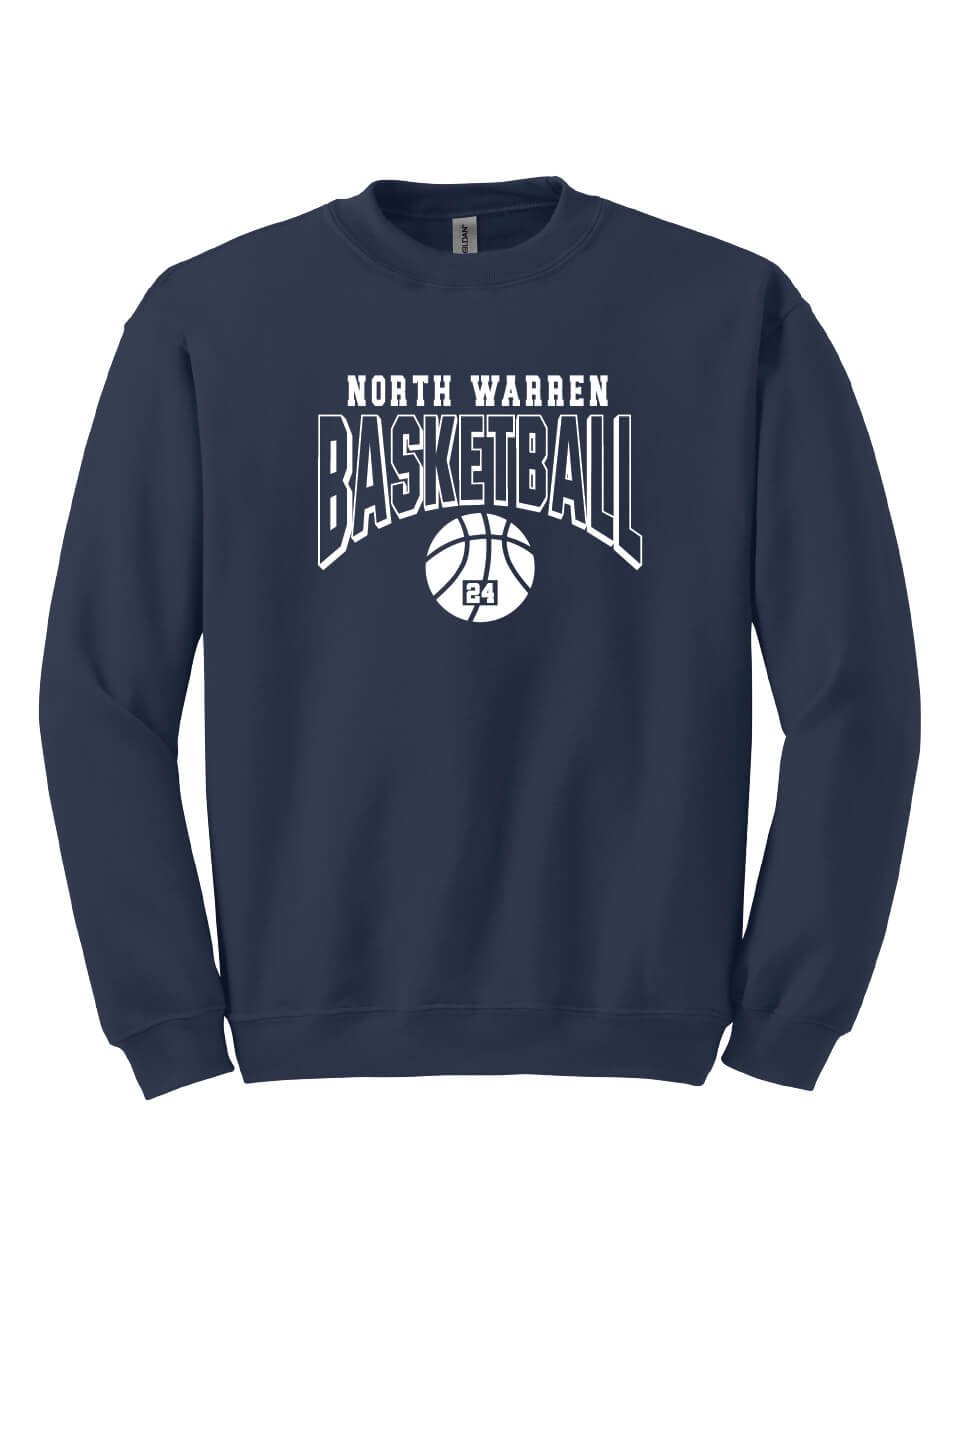 Basketball Crewneck Sweatshirt (Youth) navy